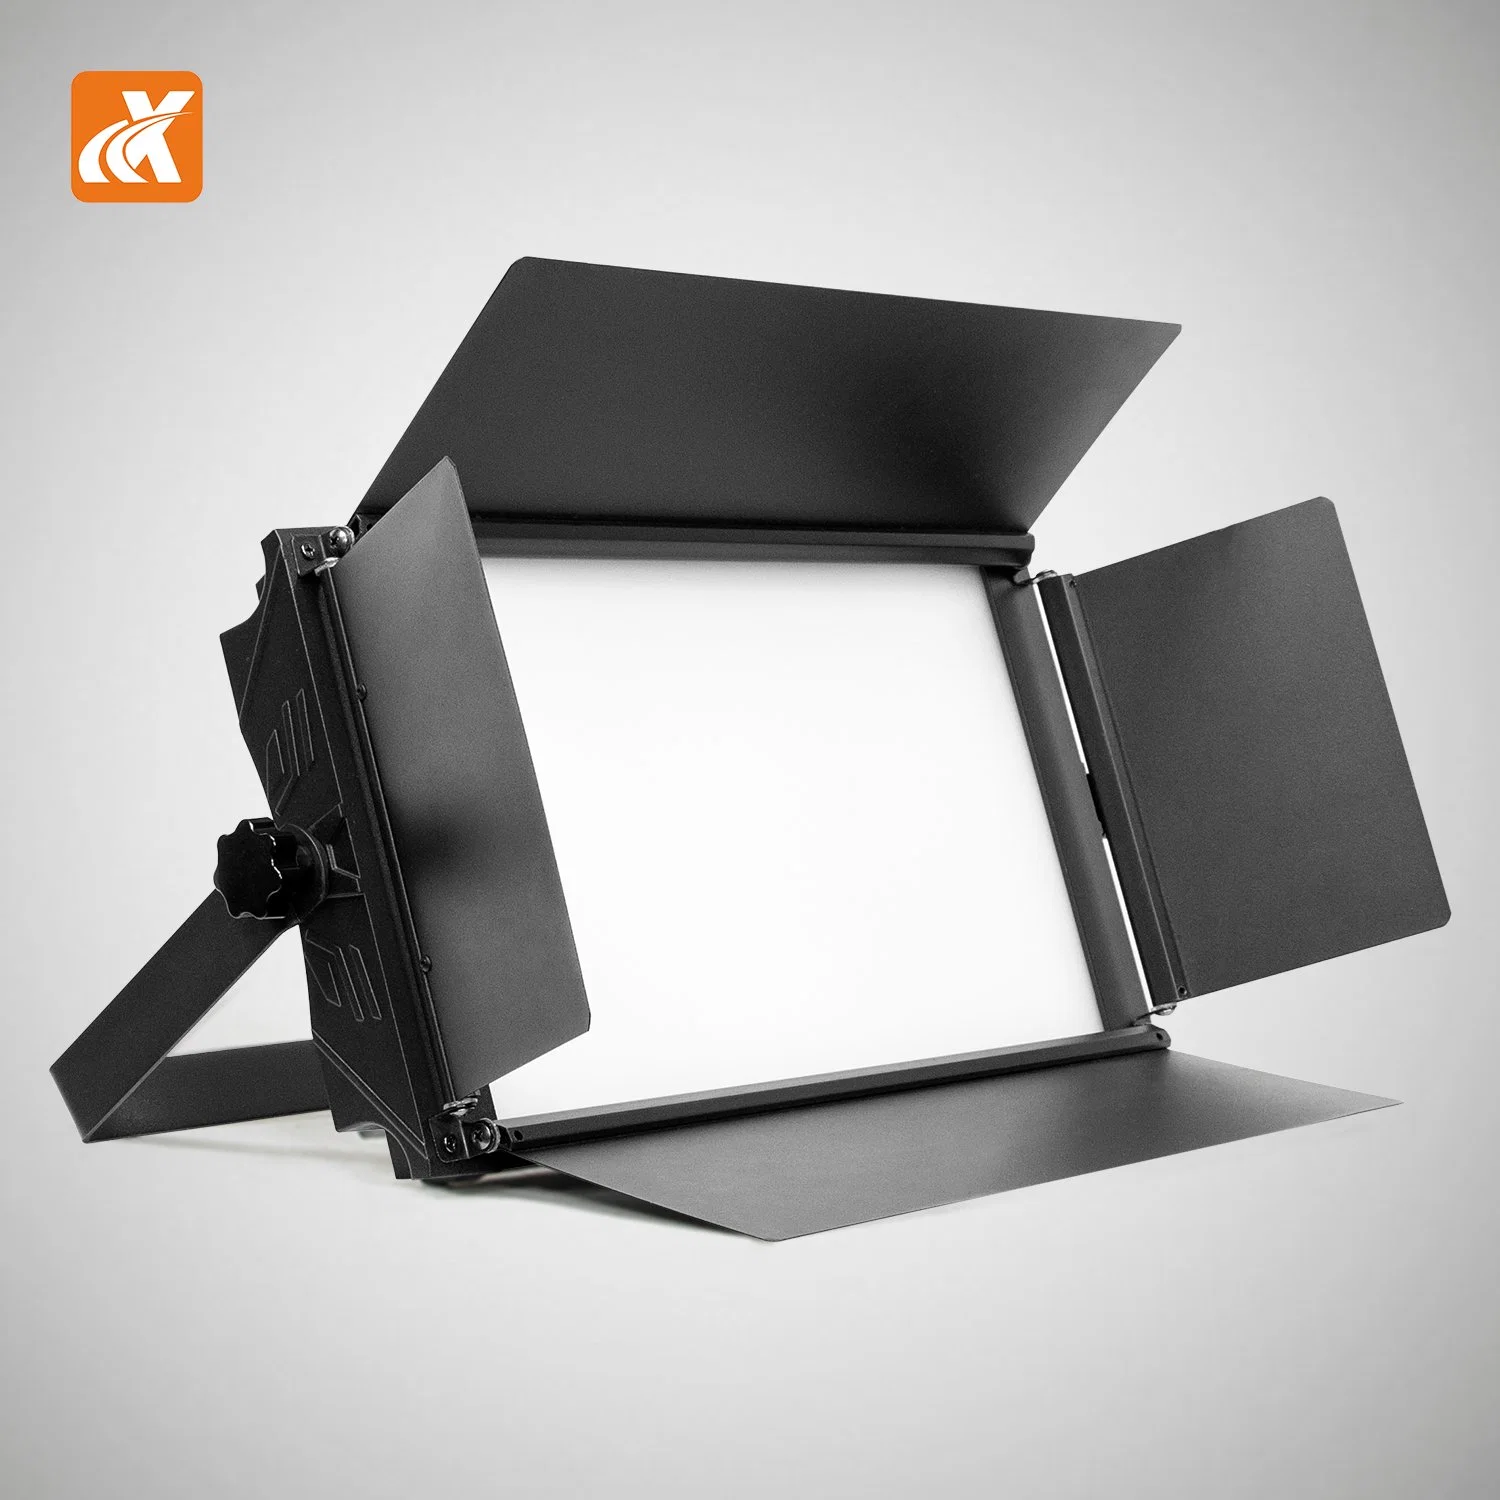 El LED-100L Factroy directo precio inferior a 100W profesional alto brillo LED Flat Panel Vídeo suave luz suave iluminación del panel de LED plano alto brillo le